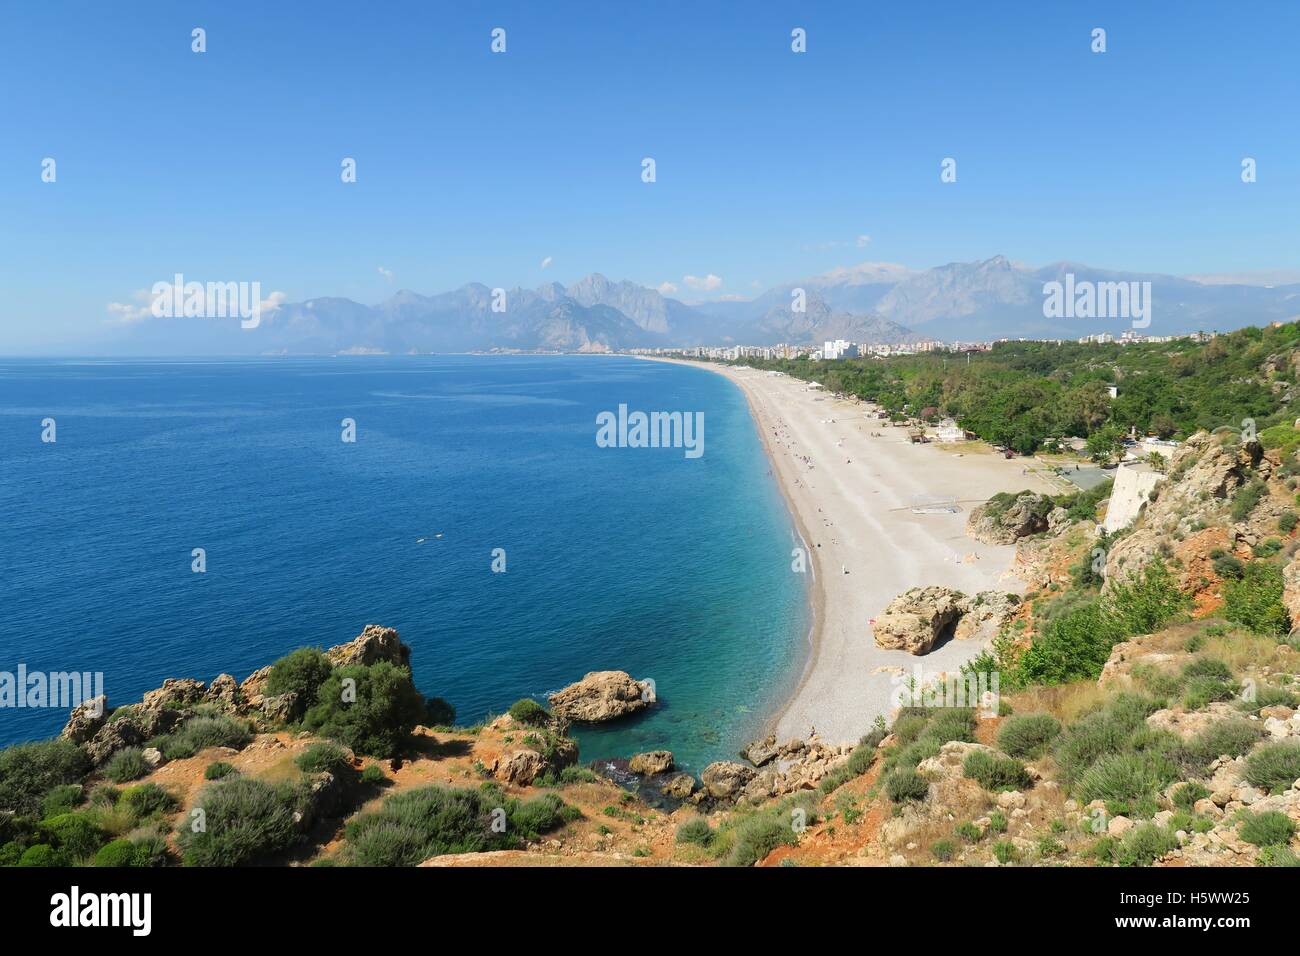 La spiaggia di Konyaalti ad Adalia con le montagne del taurus Foto Stock